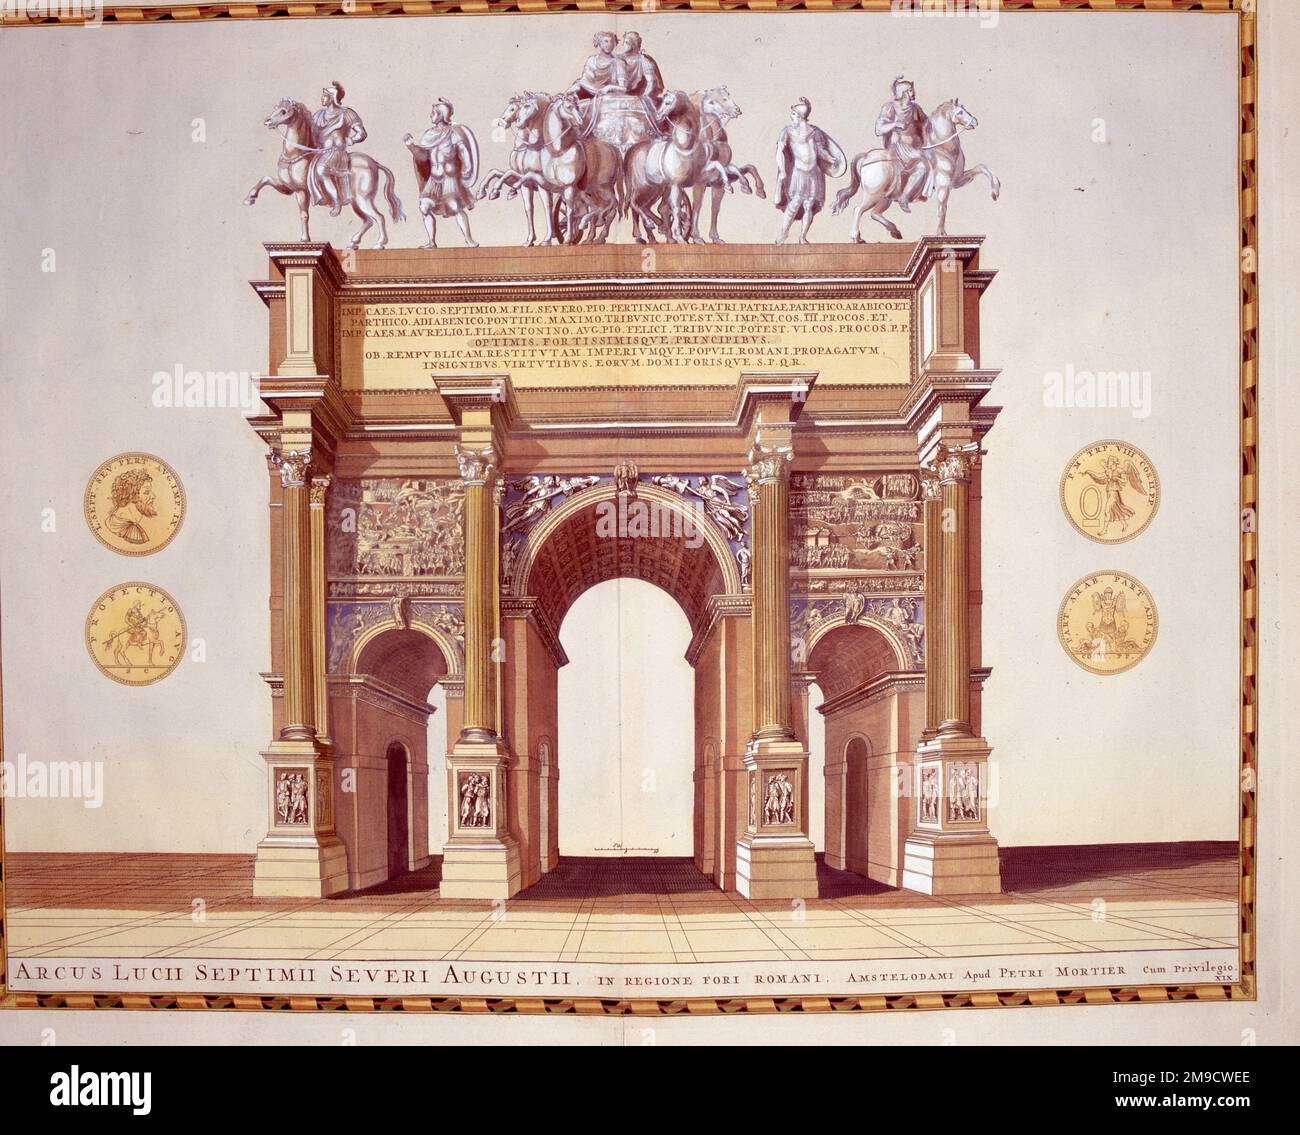 Arc de Septimius Severus, Rome, Italie - Arcus lucii septimii severi augustii Banque D'Images